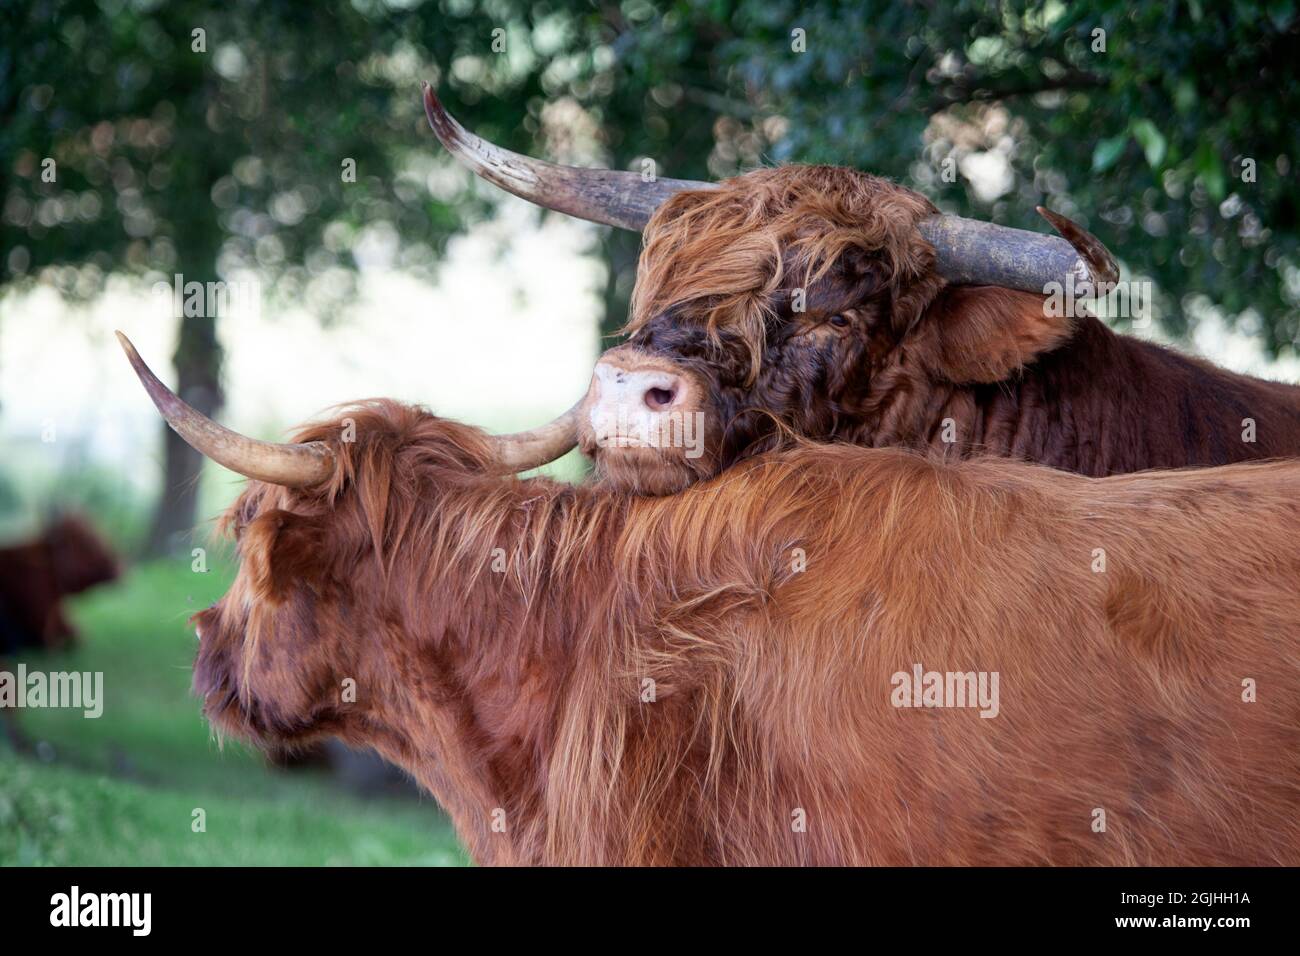 Scottish highland bull leaning on a Scottish highland cow during flirtation Stock Photo